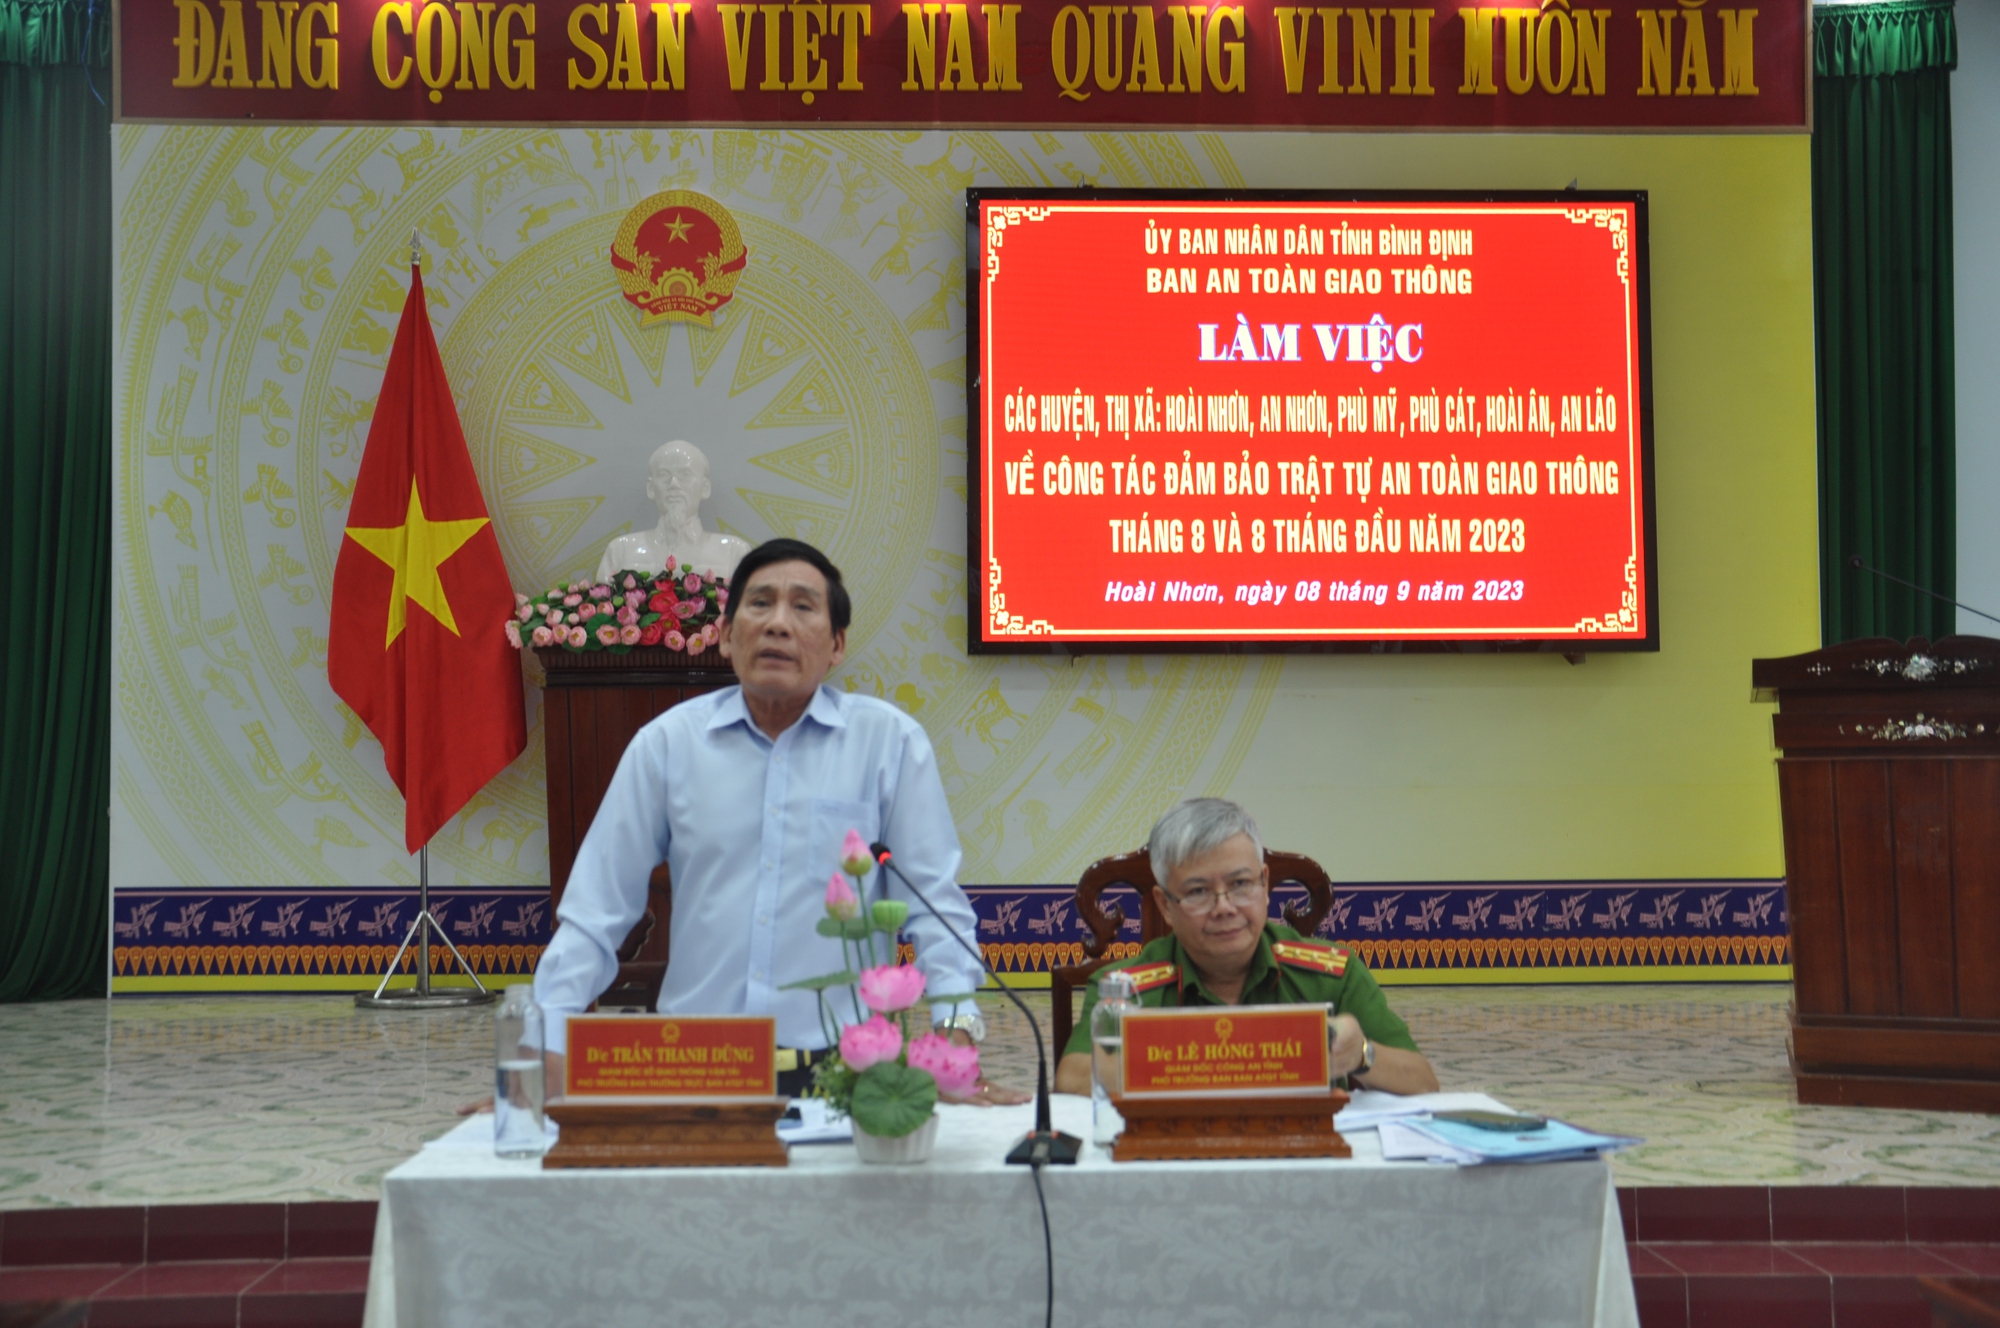 Ban ATGT Bình Định bàn giải pháp kéo giảm TNGT - Ảnh 3.